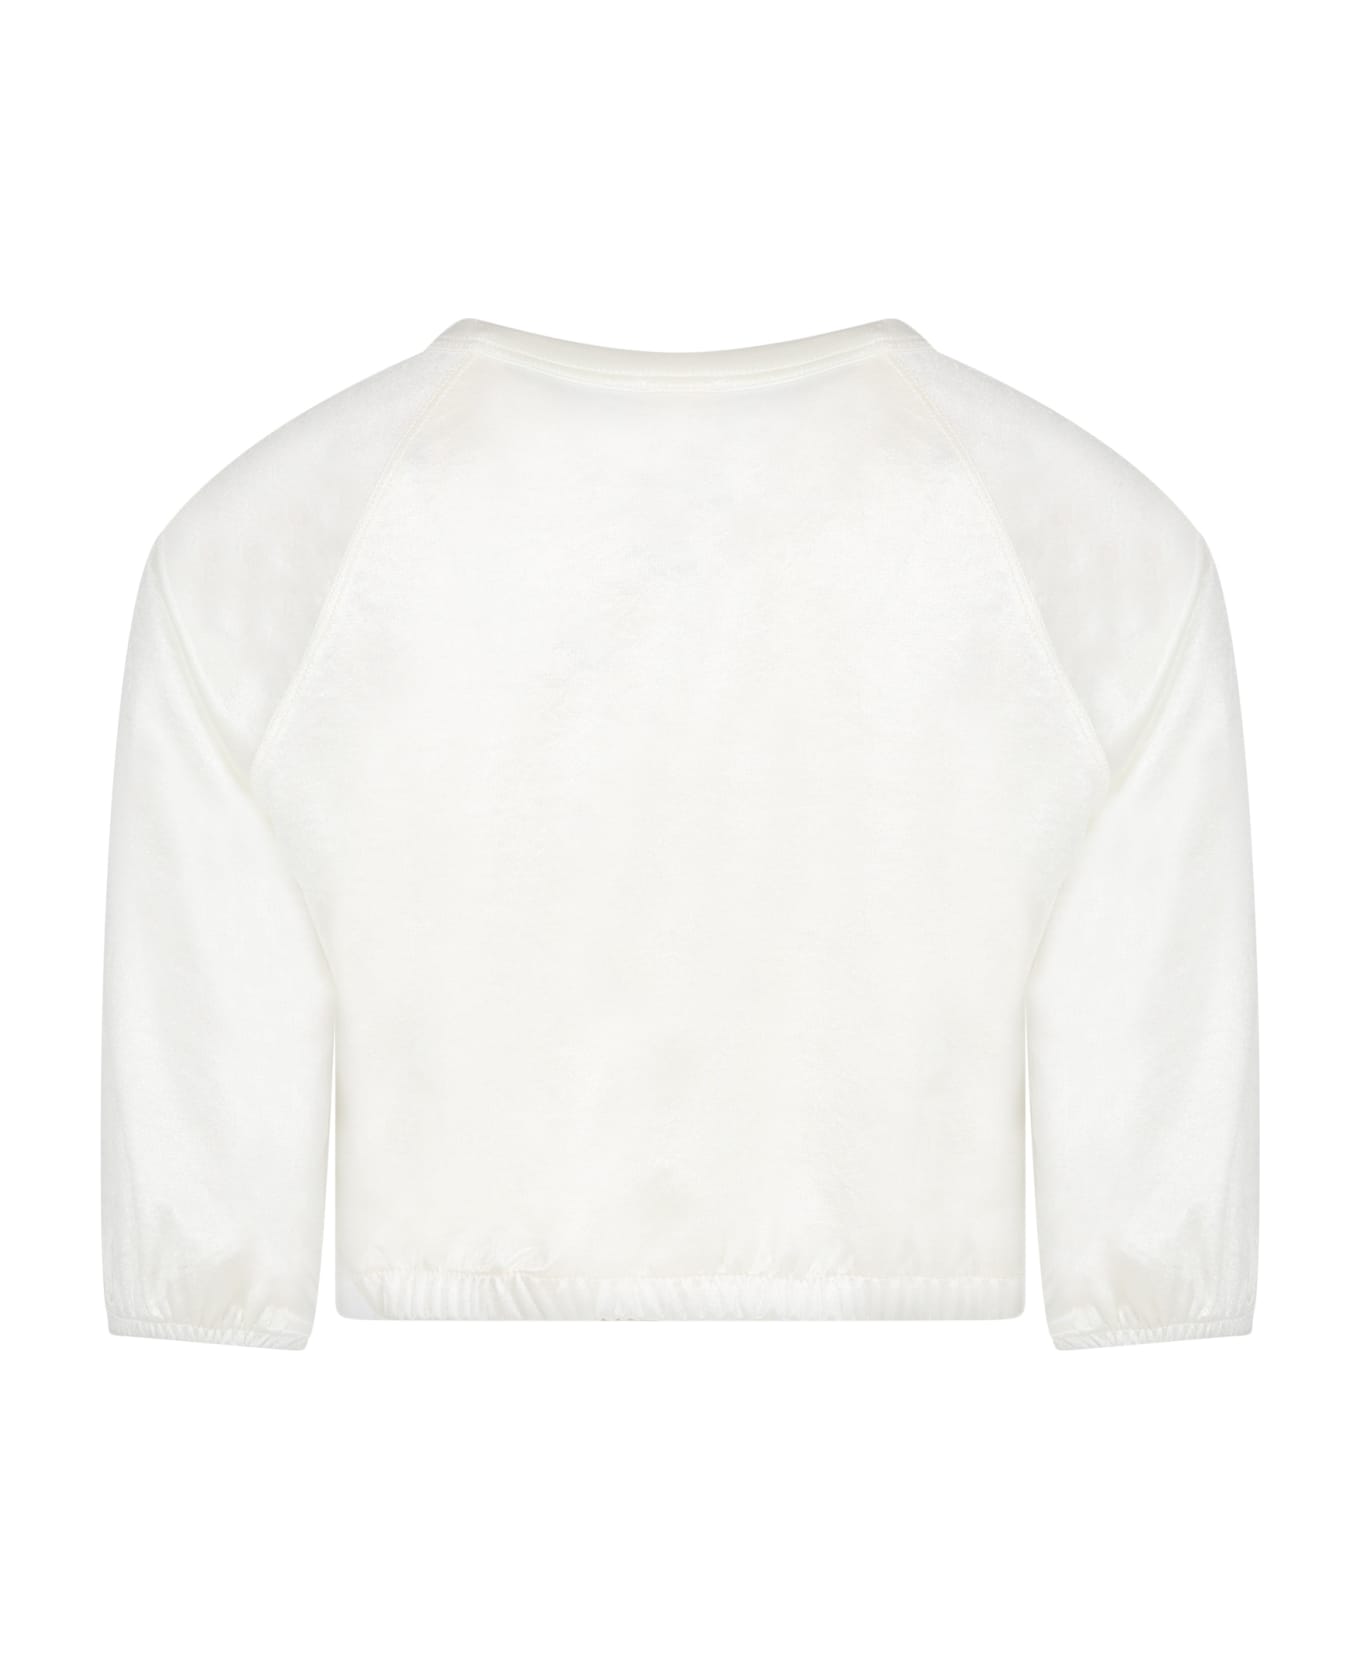 Caffe' d'Orzo Ivory Sweatshirt For Girl - Ivory ニットウェア＆スウェットシャツ